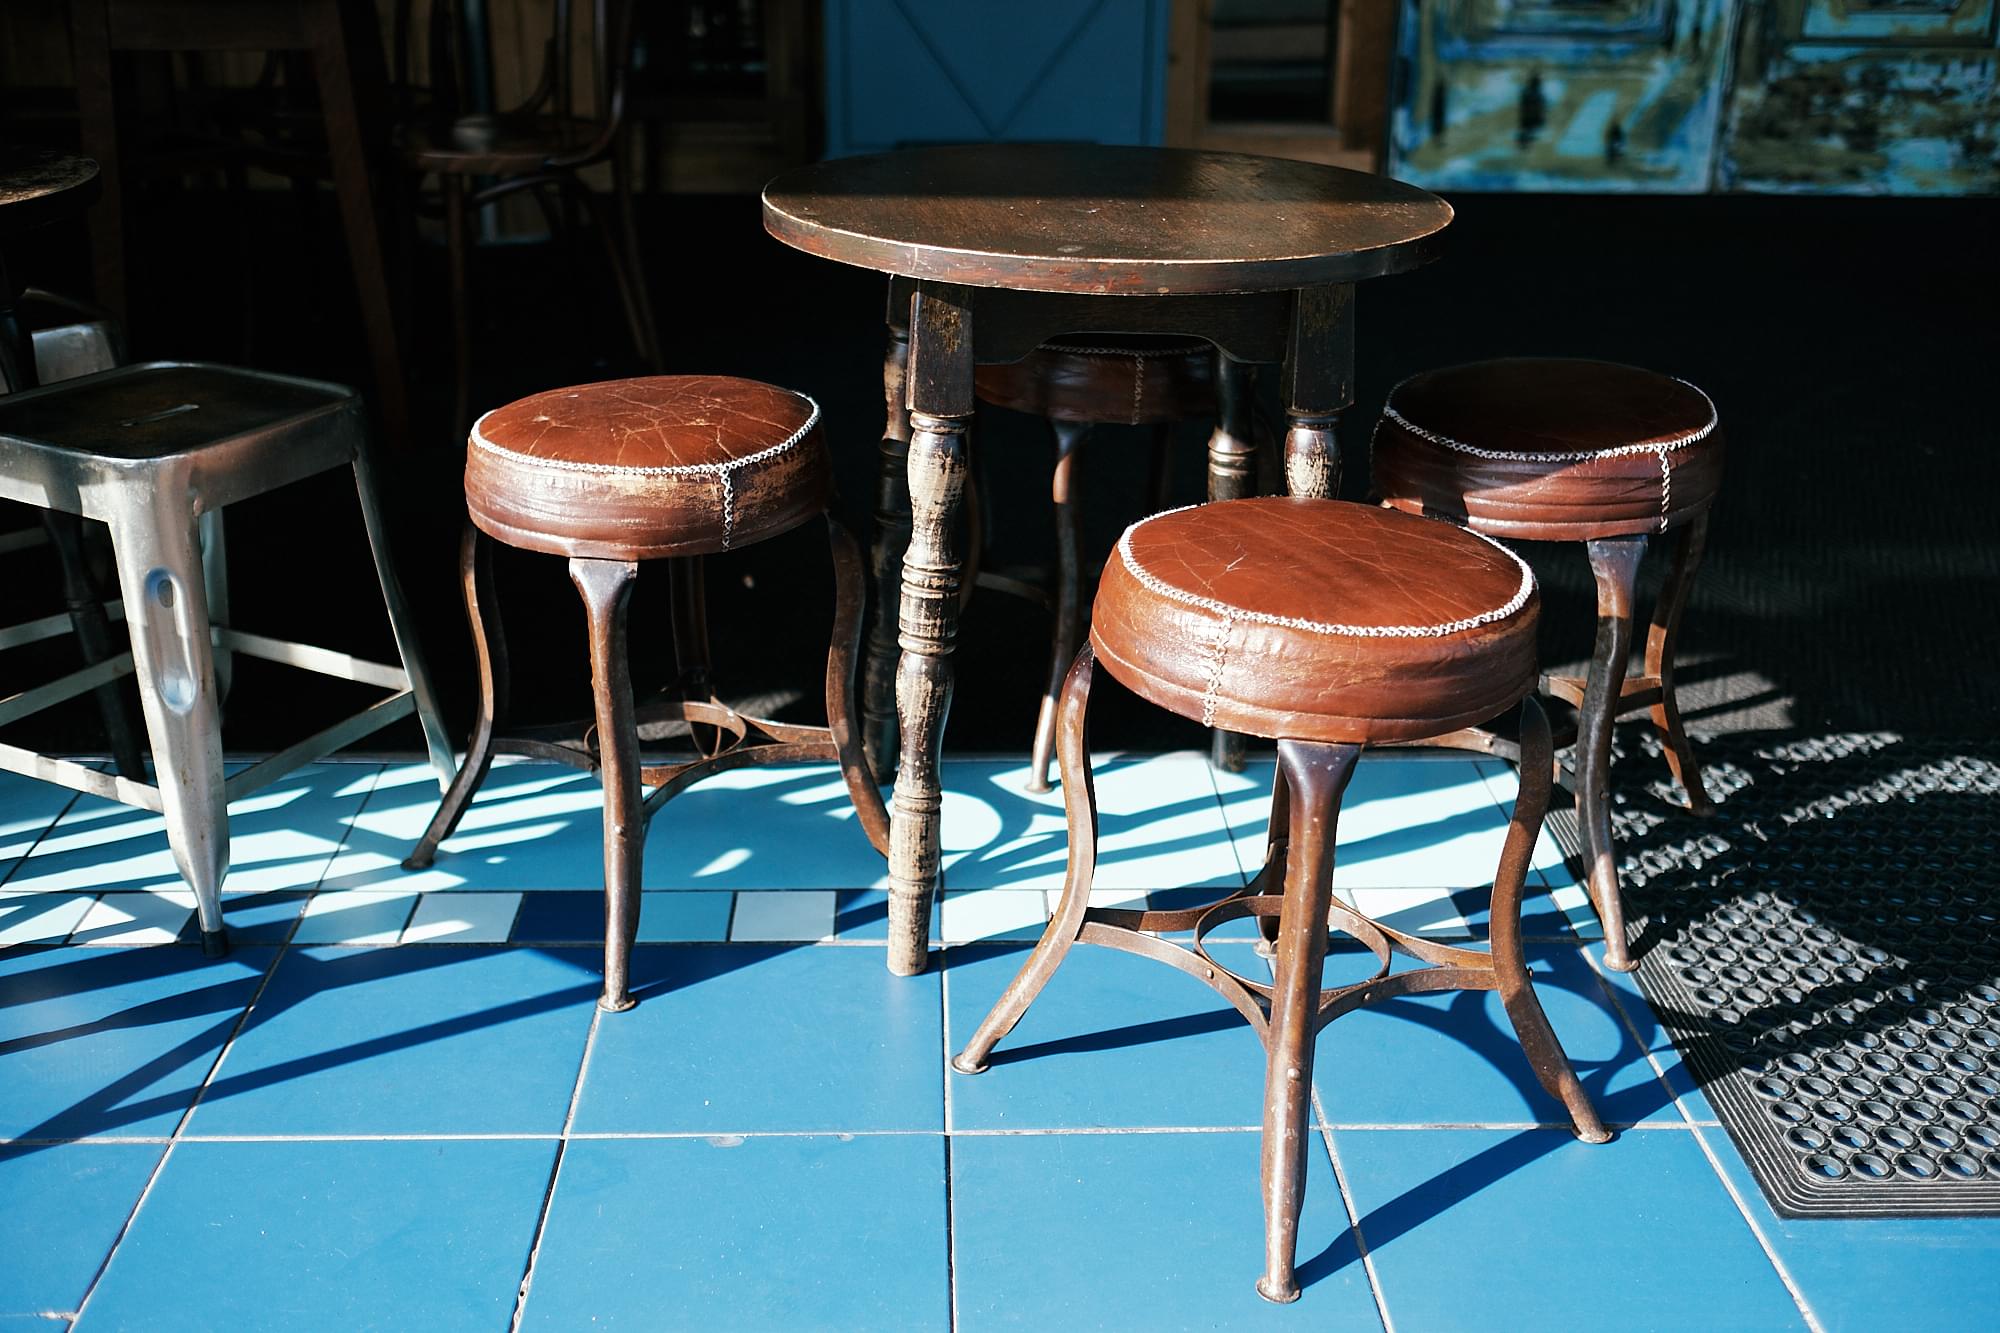 stools outside a café